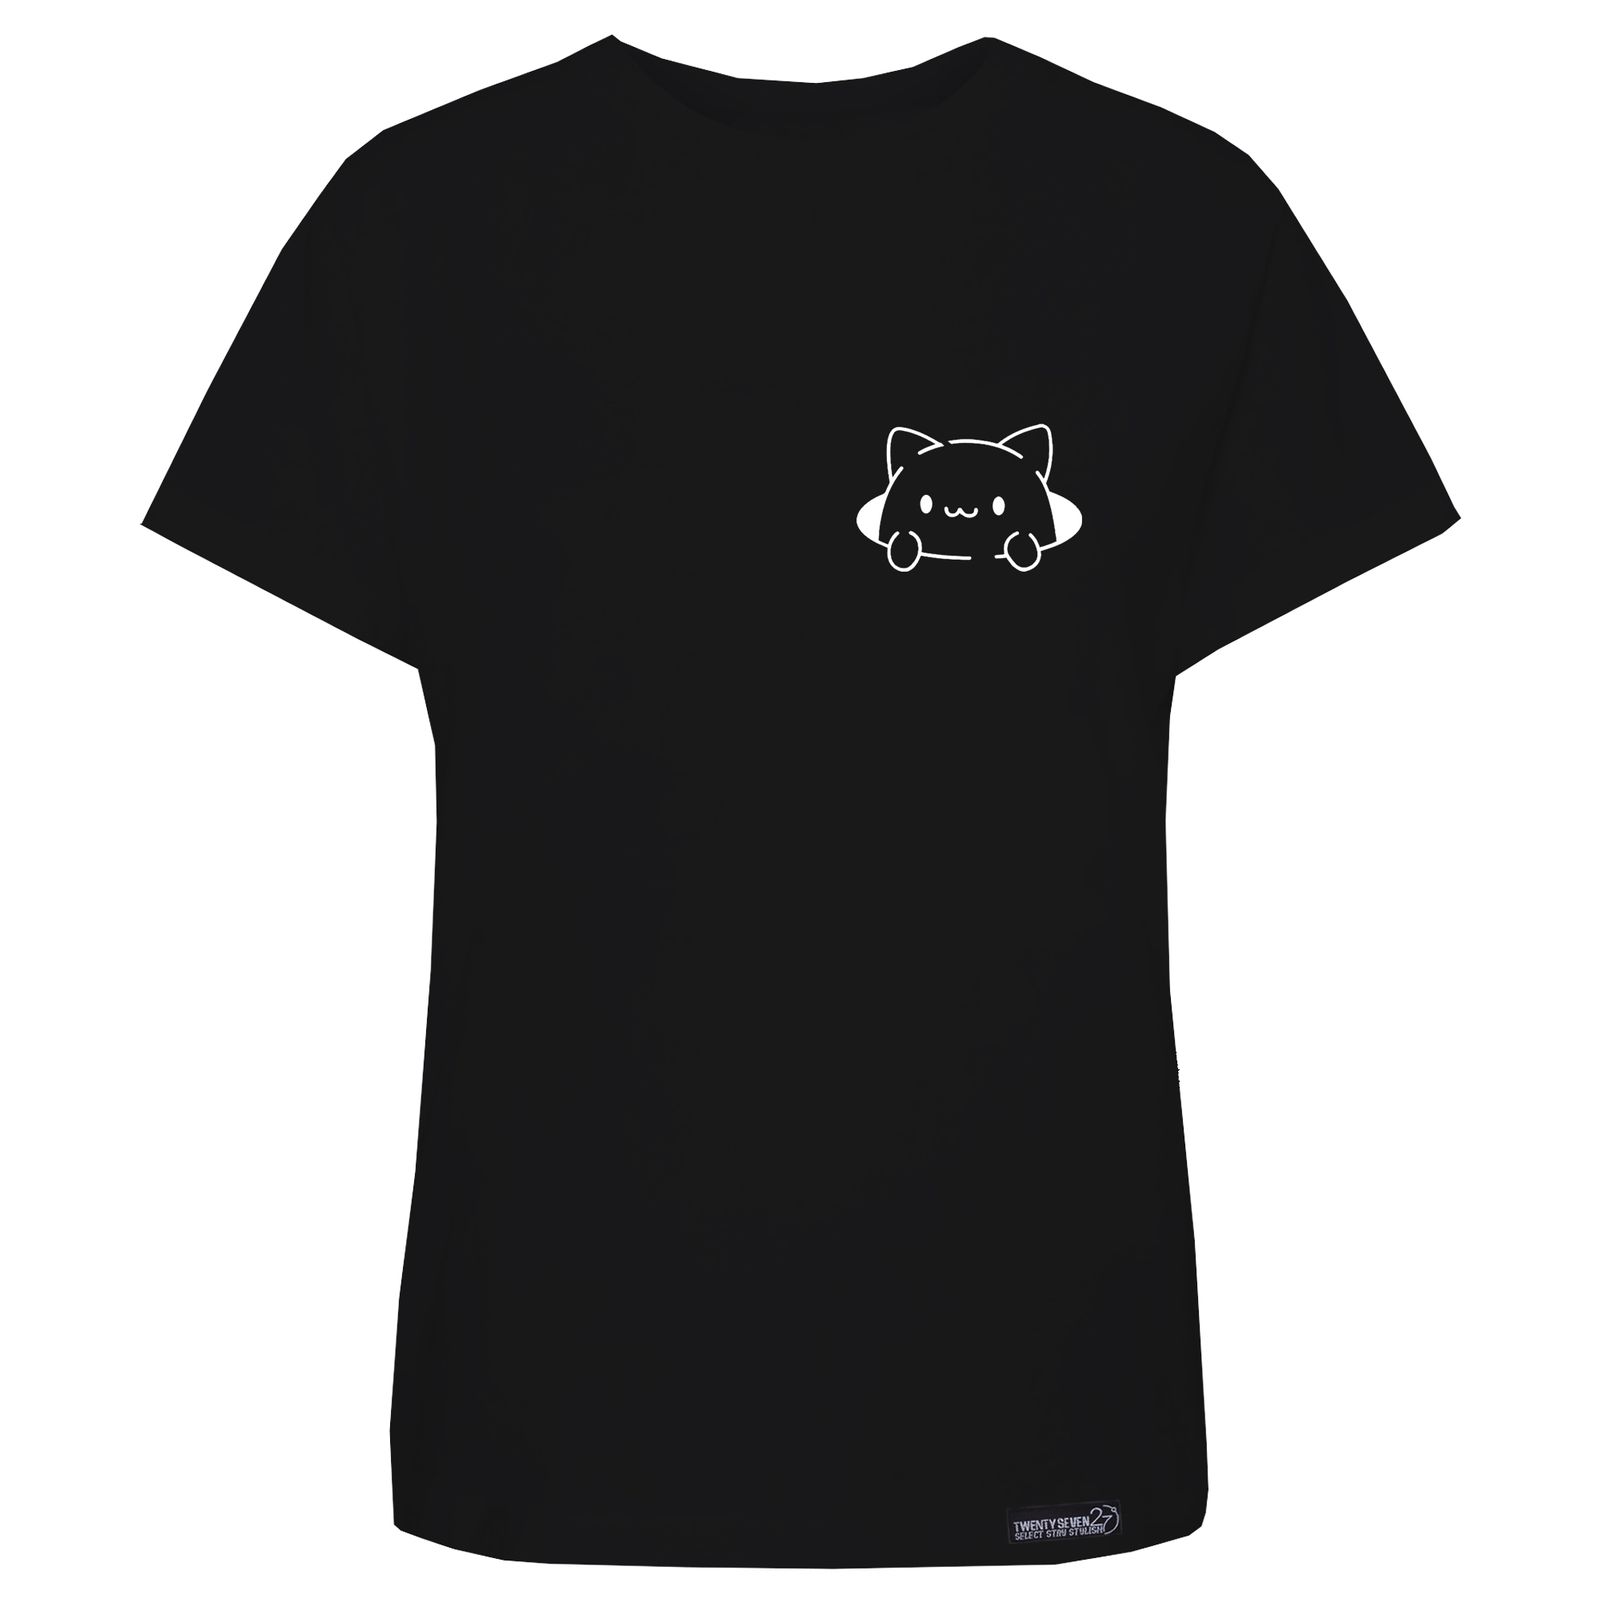 تی شرت آستین کوتاه زنانه 27 مدل  گربه کد WN1219 رنگ مشکی -  - 2